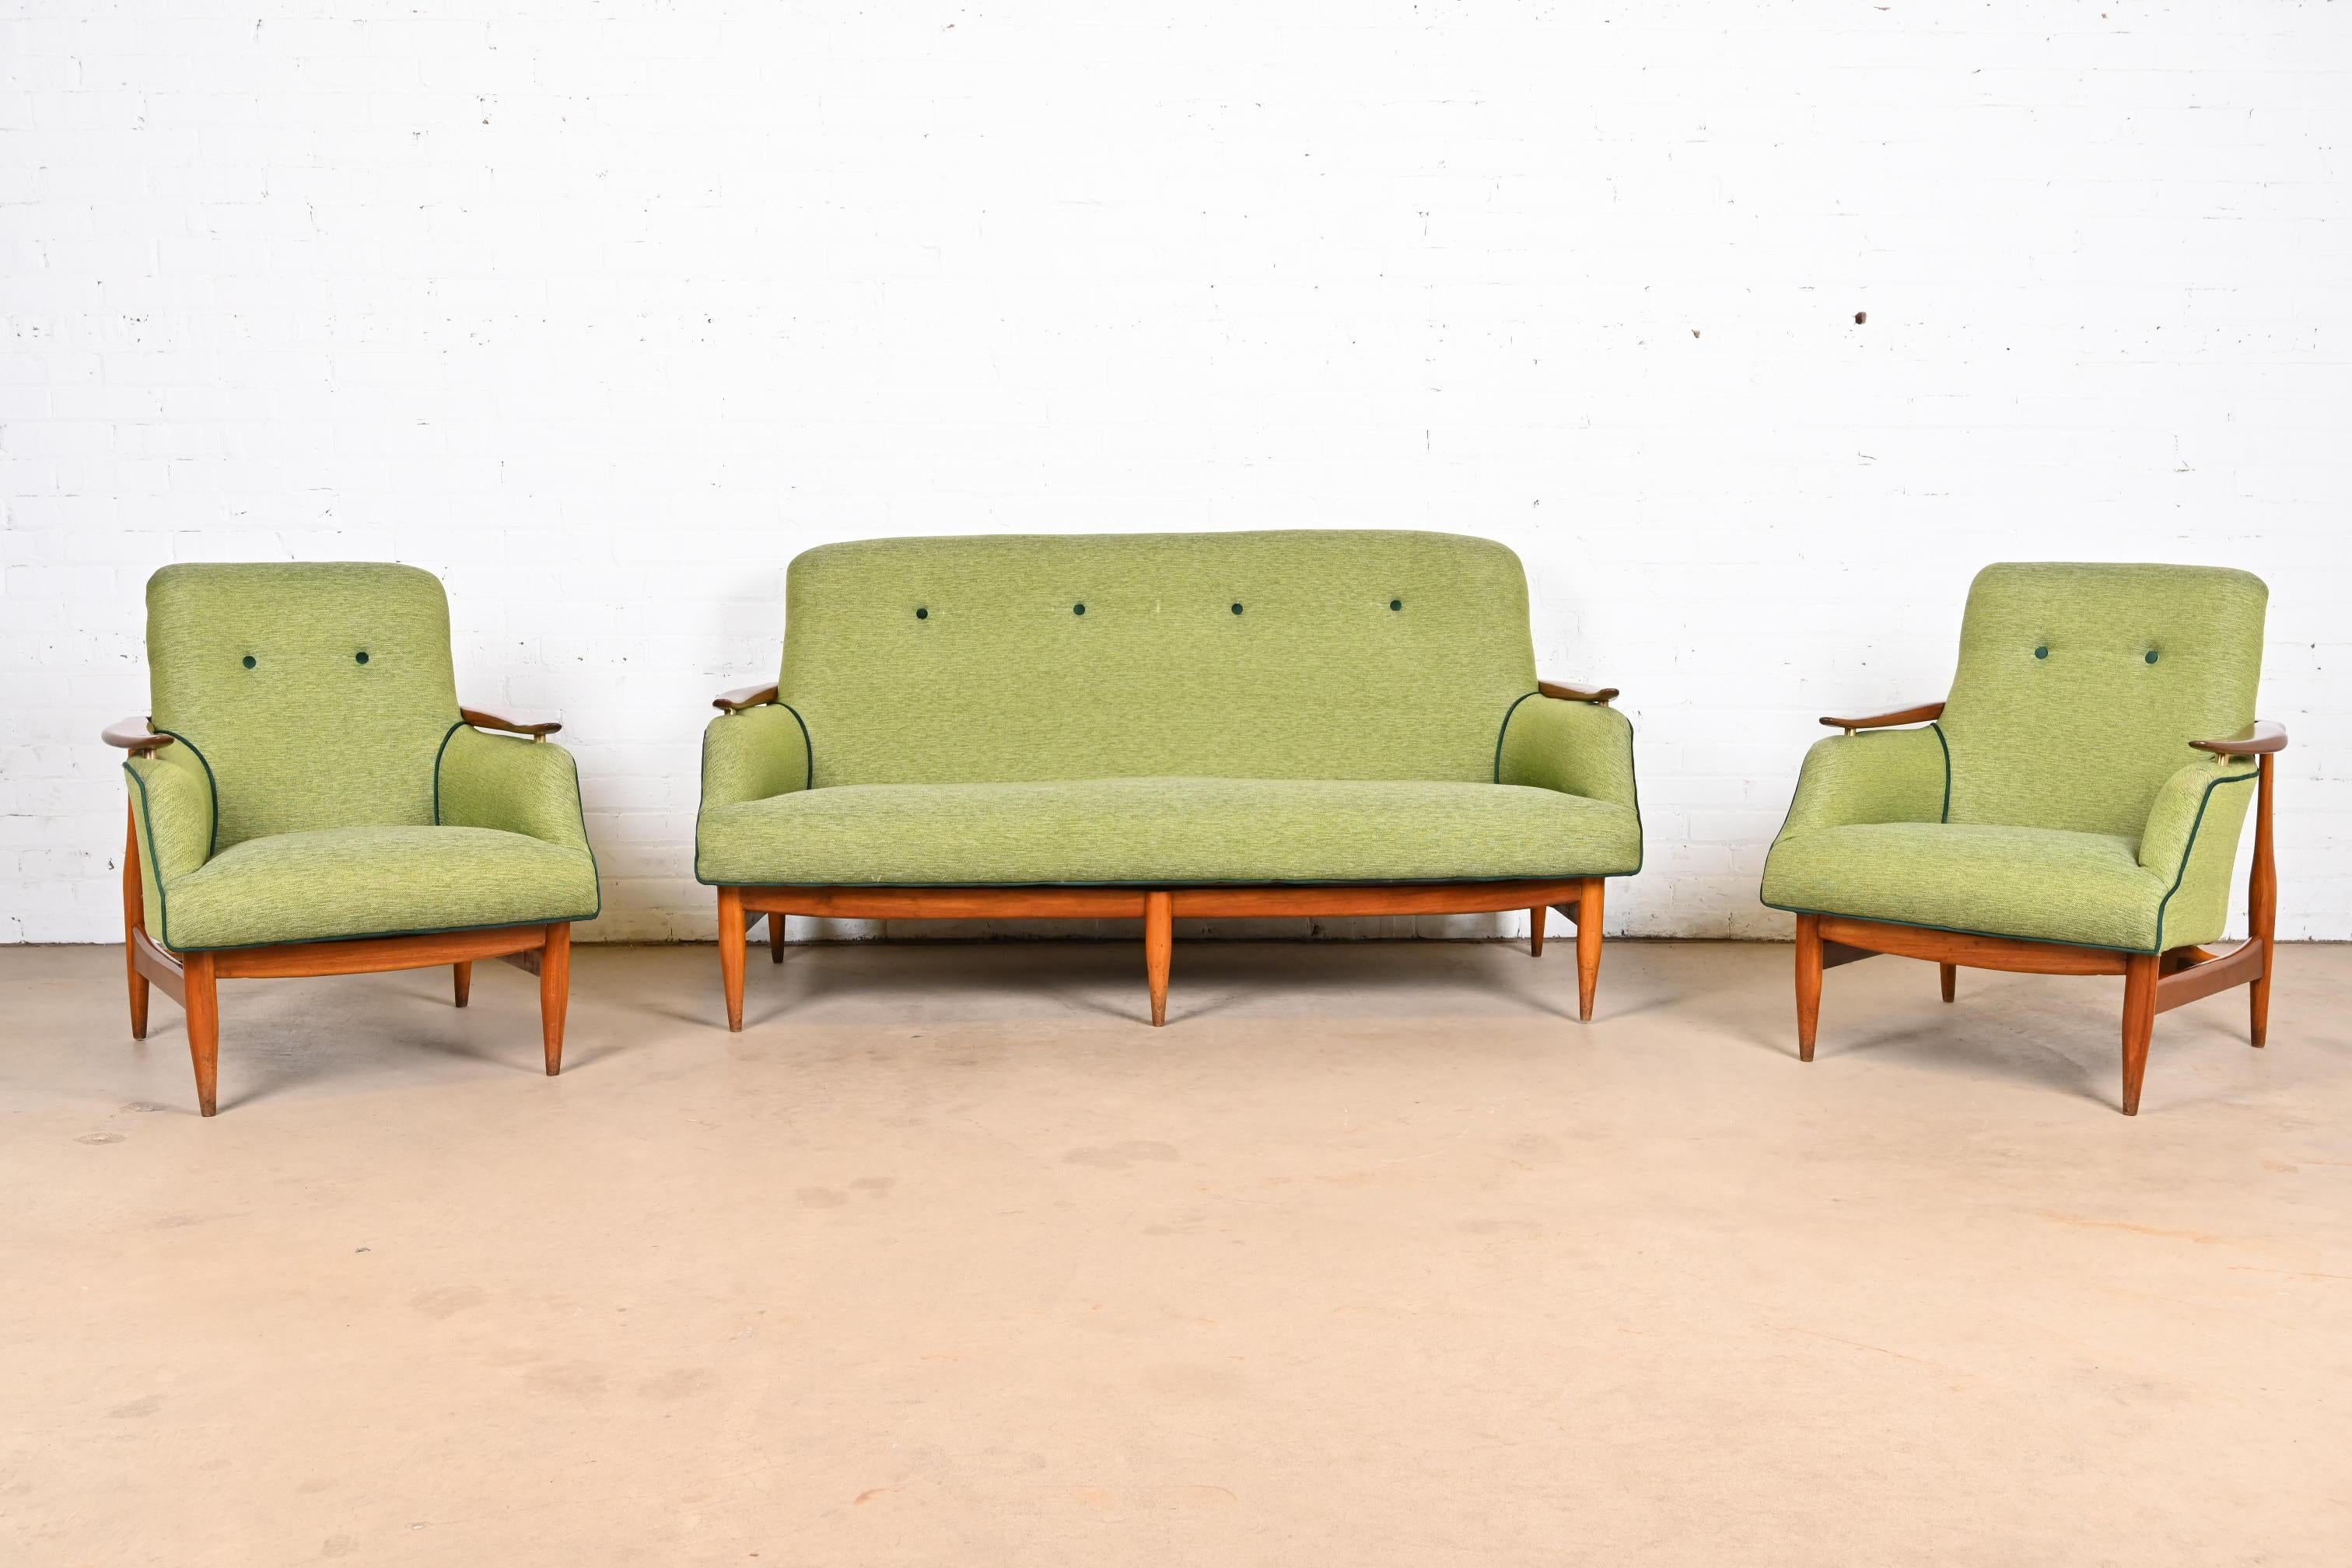 Finn Juhl Danish Modern Upholstered Sculpted Teak Sofa, 1950s For Sale 6